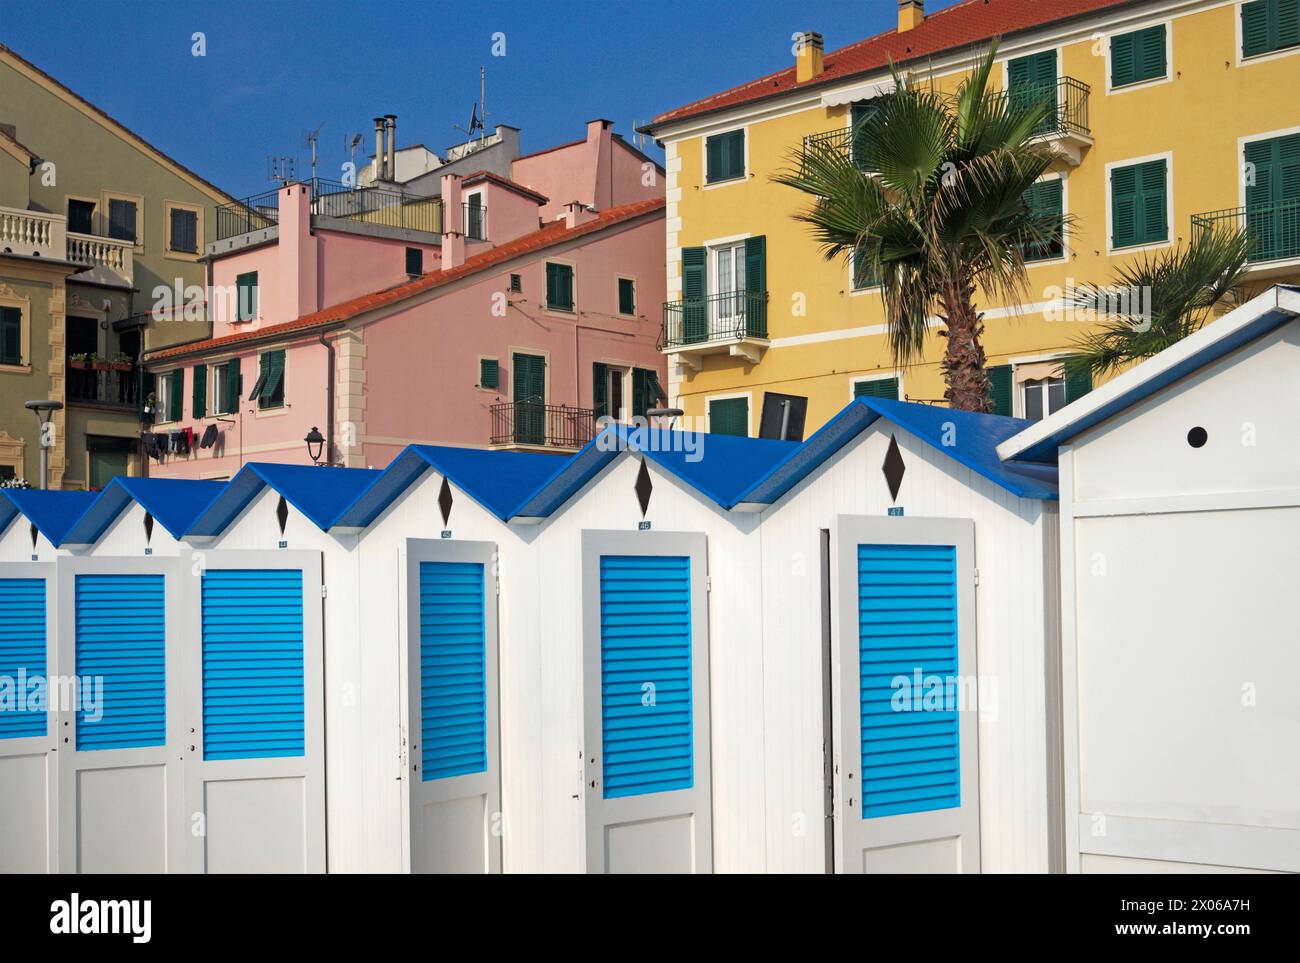 Cabañas de playa y casas tradicionales en Celle Ligure, Liguria, Italia Foto de stock